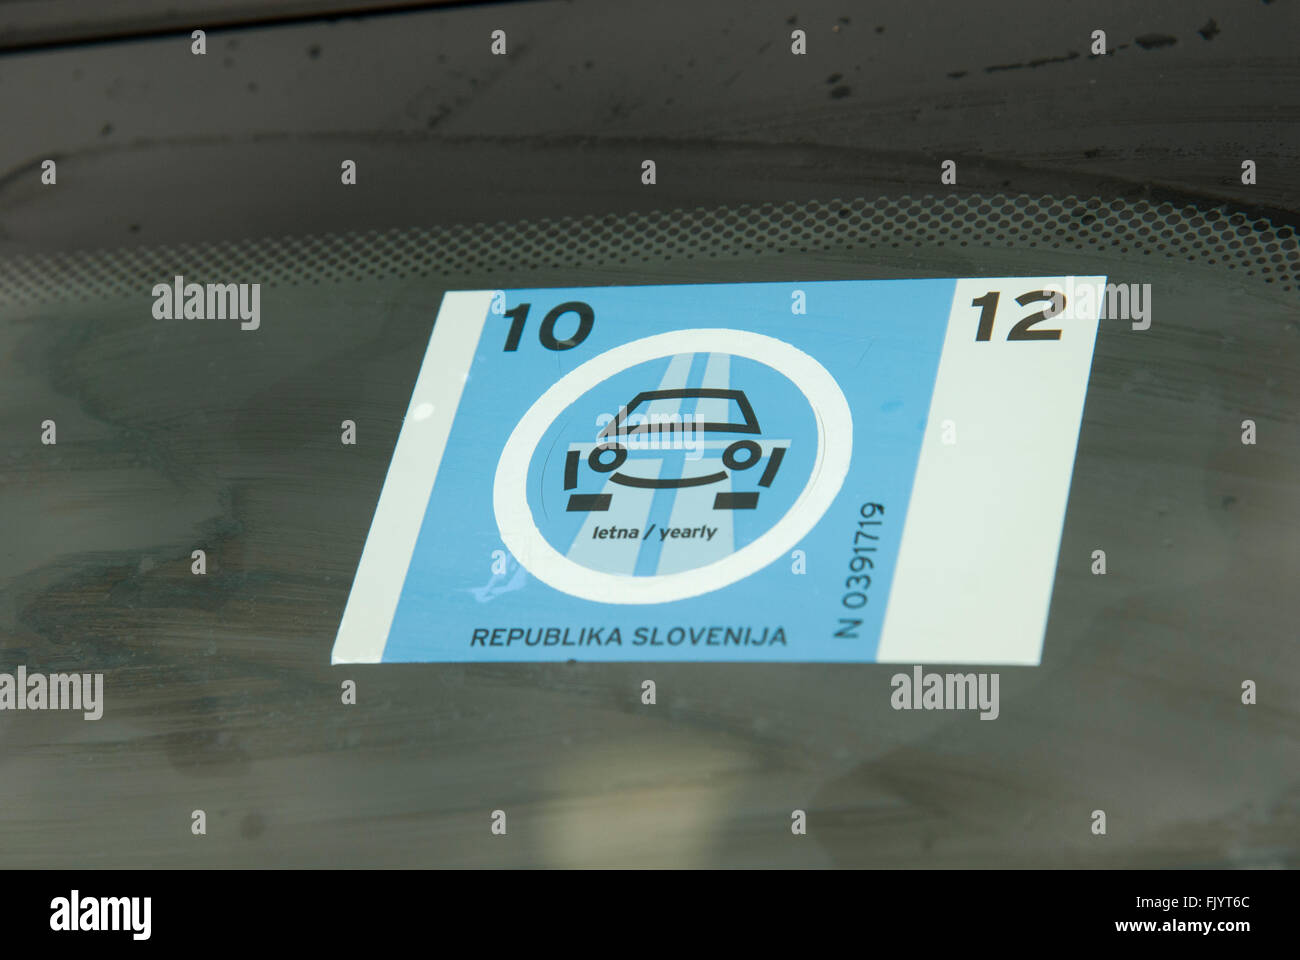 Eslovenia, Vignette - coches que permite viajar gratis en el sistema de autopistas Foto de stock